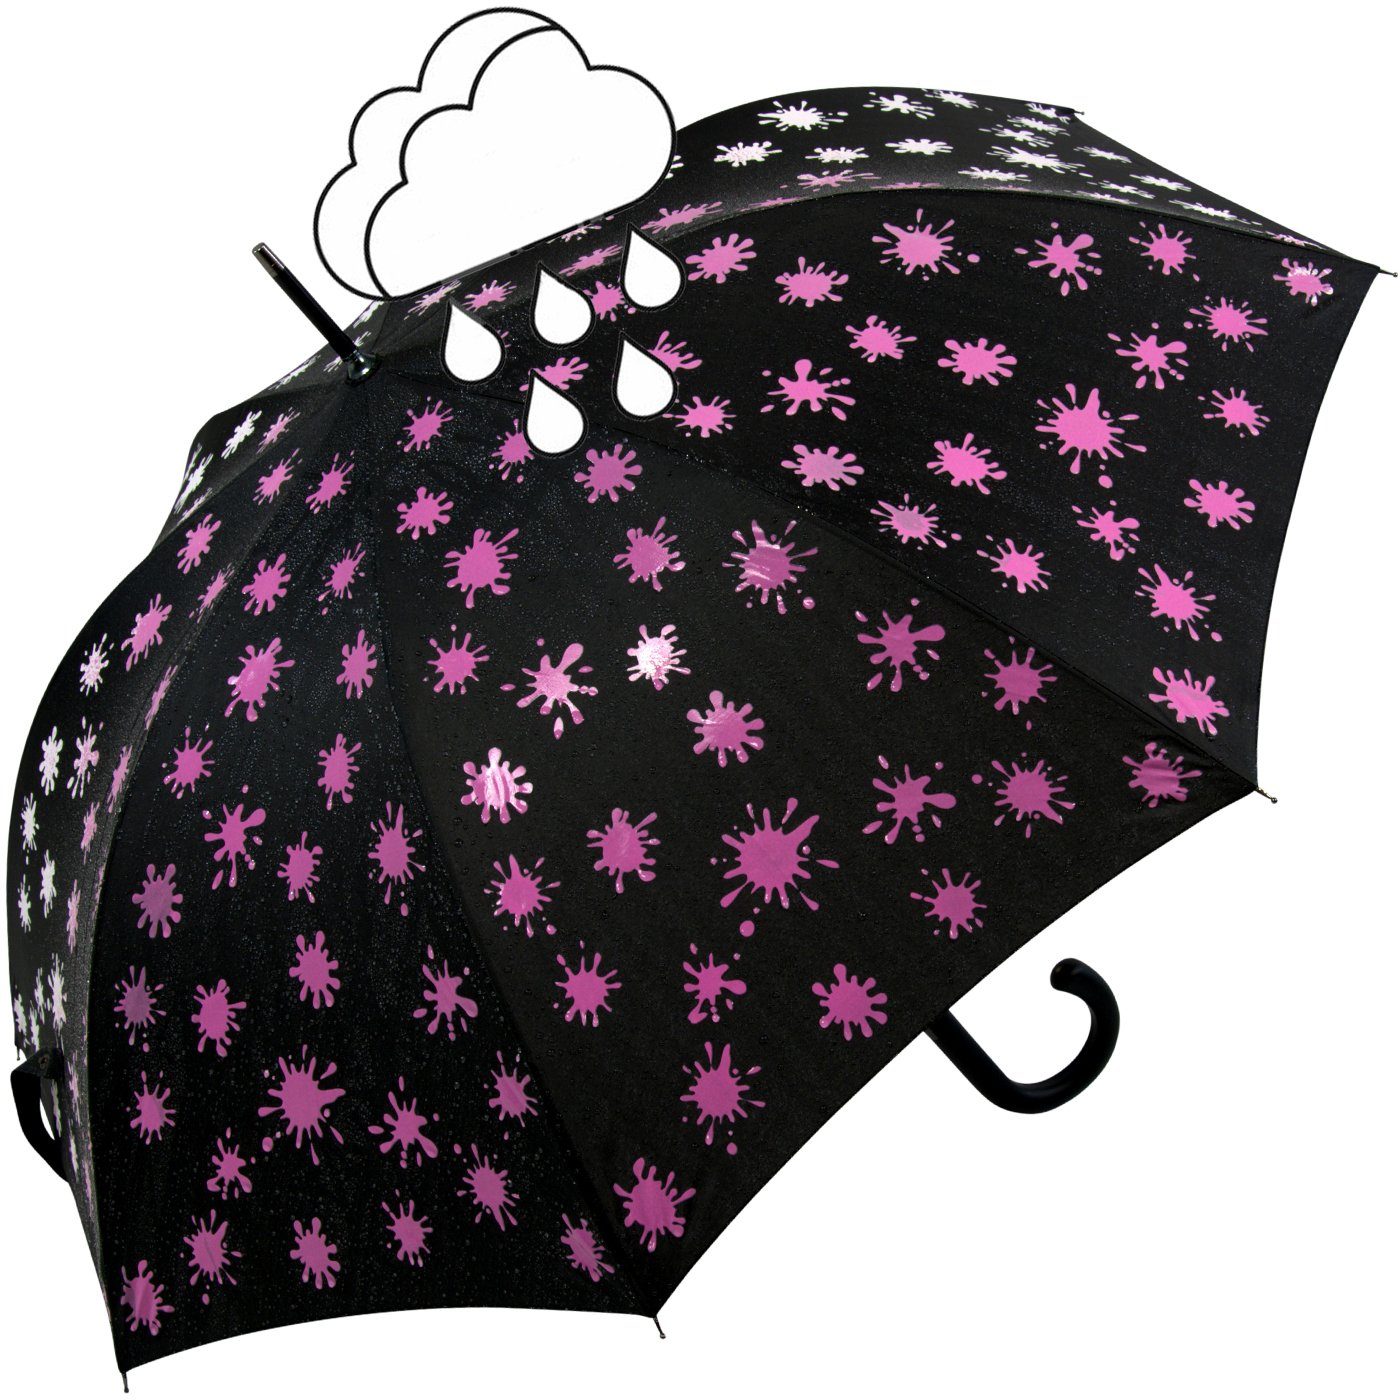 mit iX-brella Nässe Wet bei Damenschirm neon-pink Farbkleckse Automatik schwarz-weiß-neonpink Print, und - Farbänderung iX-brella Langregenschirm